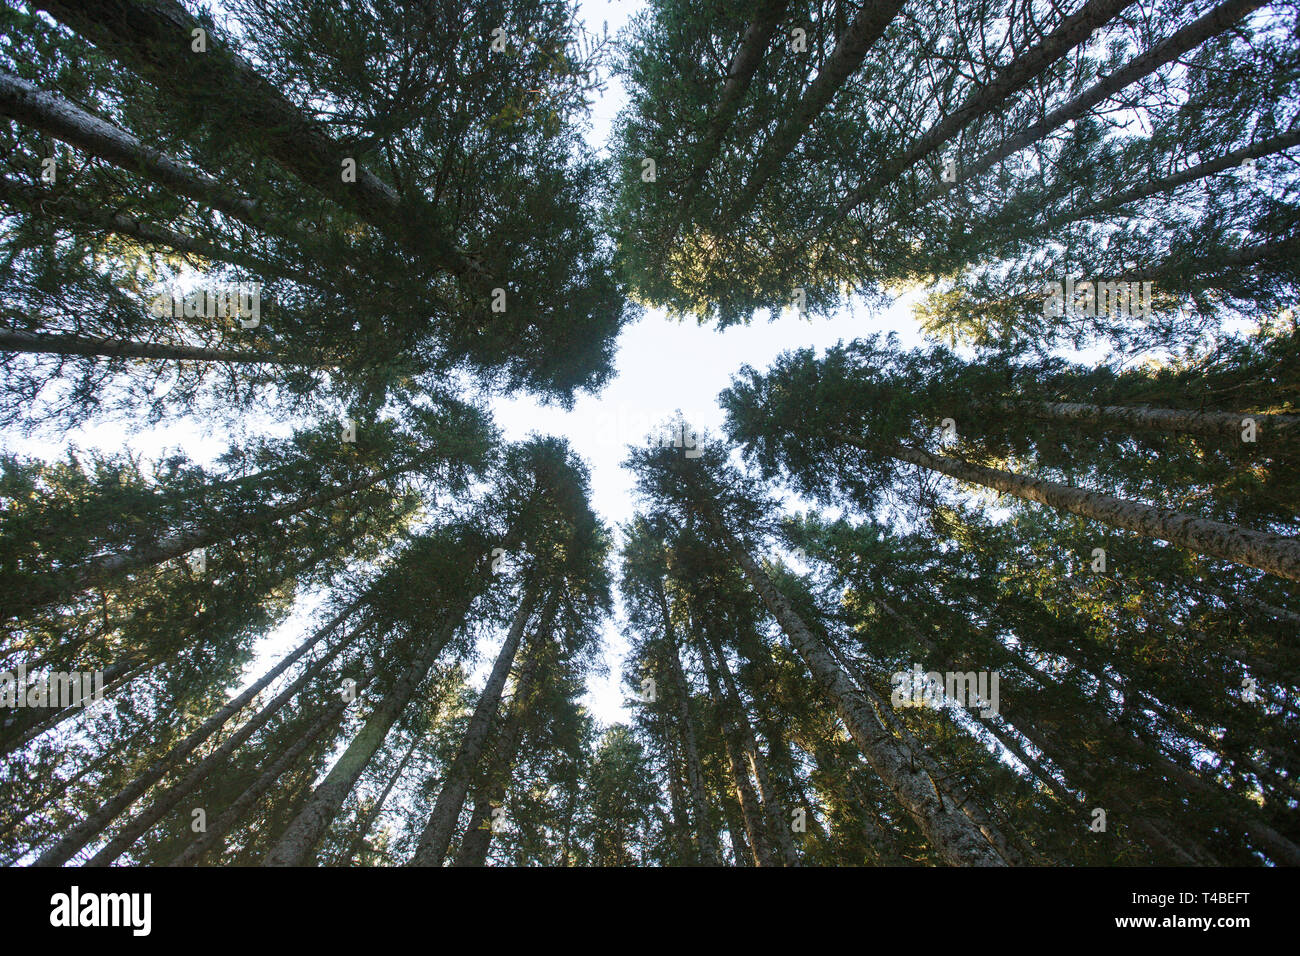 Foresta di dense foreste di abete rosso contro il cielo blu, unica vista dal basso. L'industria sostenibile, eco-friendly forestali, pace e silenzio concept Foto Stock